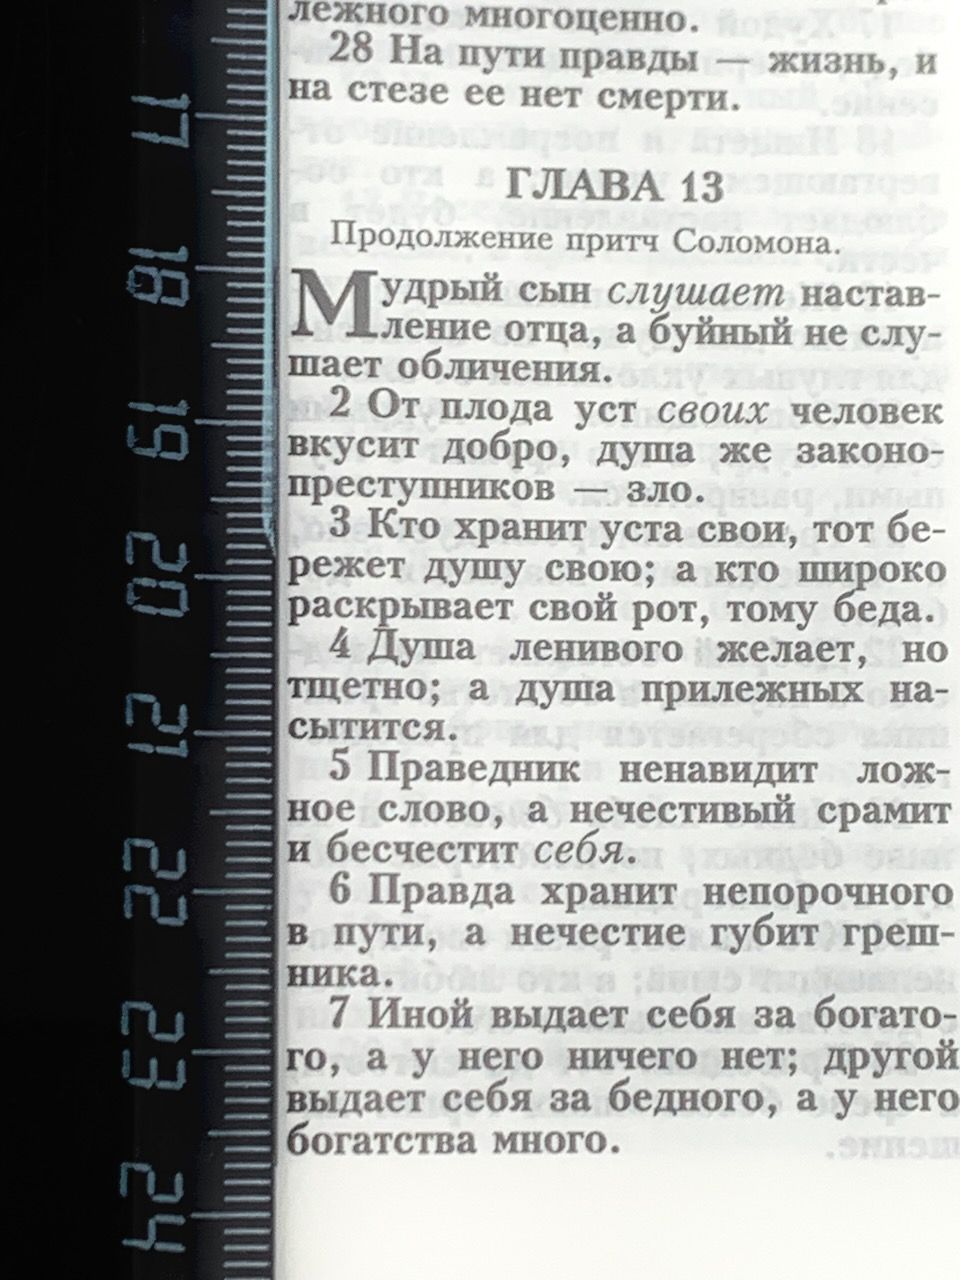 Библия 053z код B4 надпись "Библия", кожаный переплет на молнии, цвет темно-синий пятнистый, формат 140*202 мм